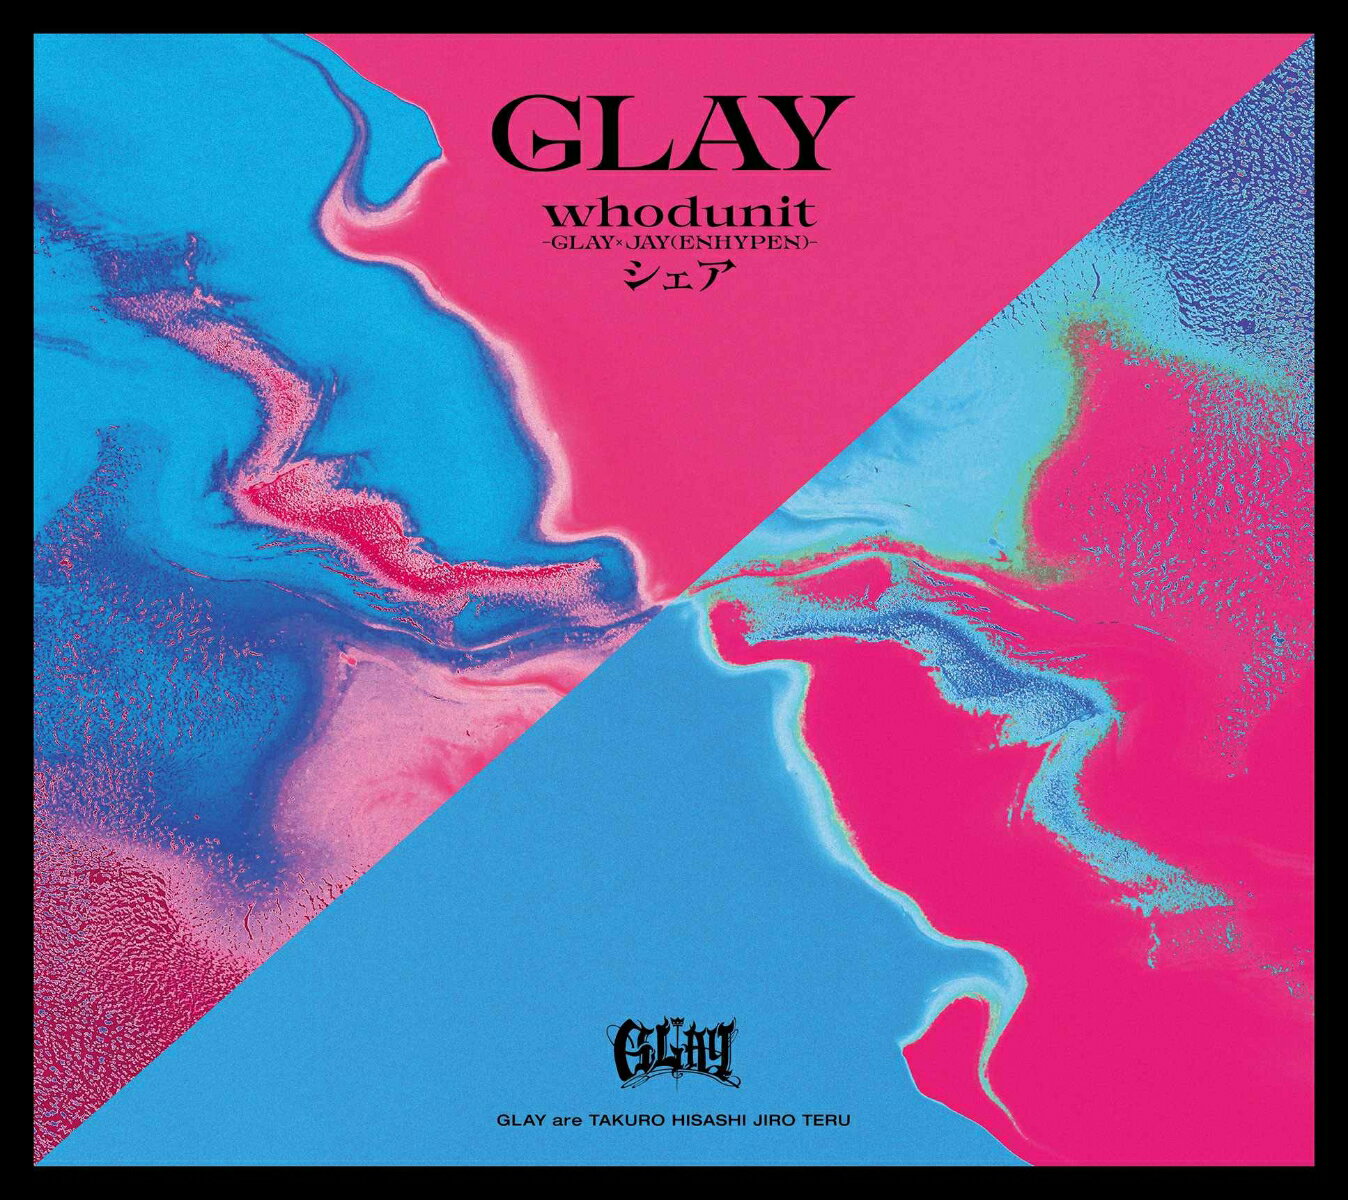 【楽天ブックス限定先着特典】whodunit-GLAY × JAY(ENHYPEN)- /シェア【CD Only】(缶バッジスクエア型(57mm))